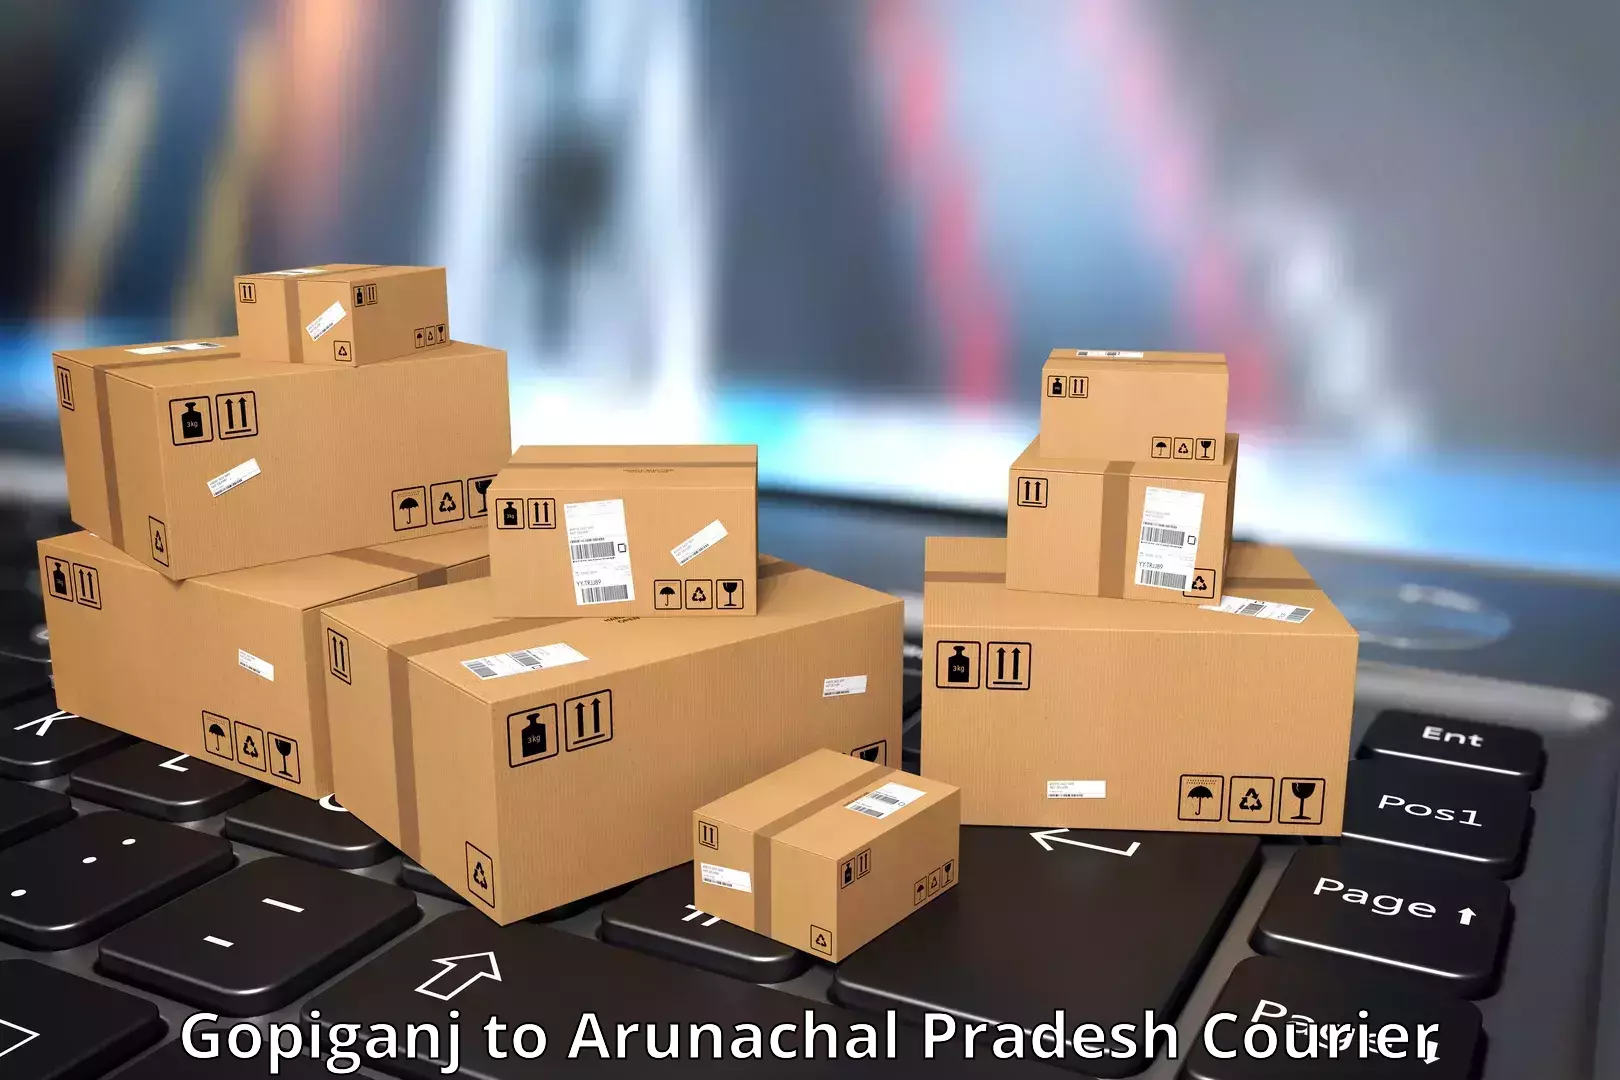 Next-generation courier services Gopiganj to Papum Pare